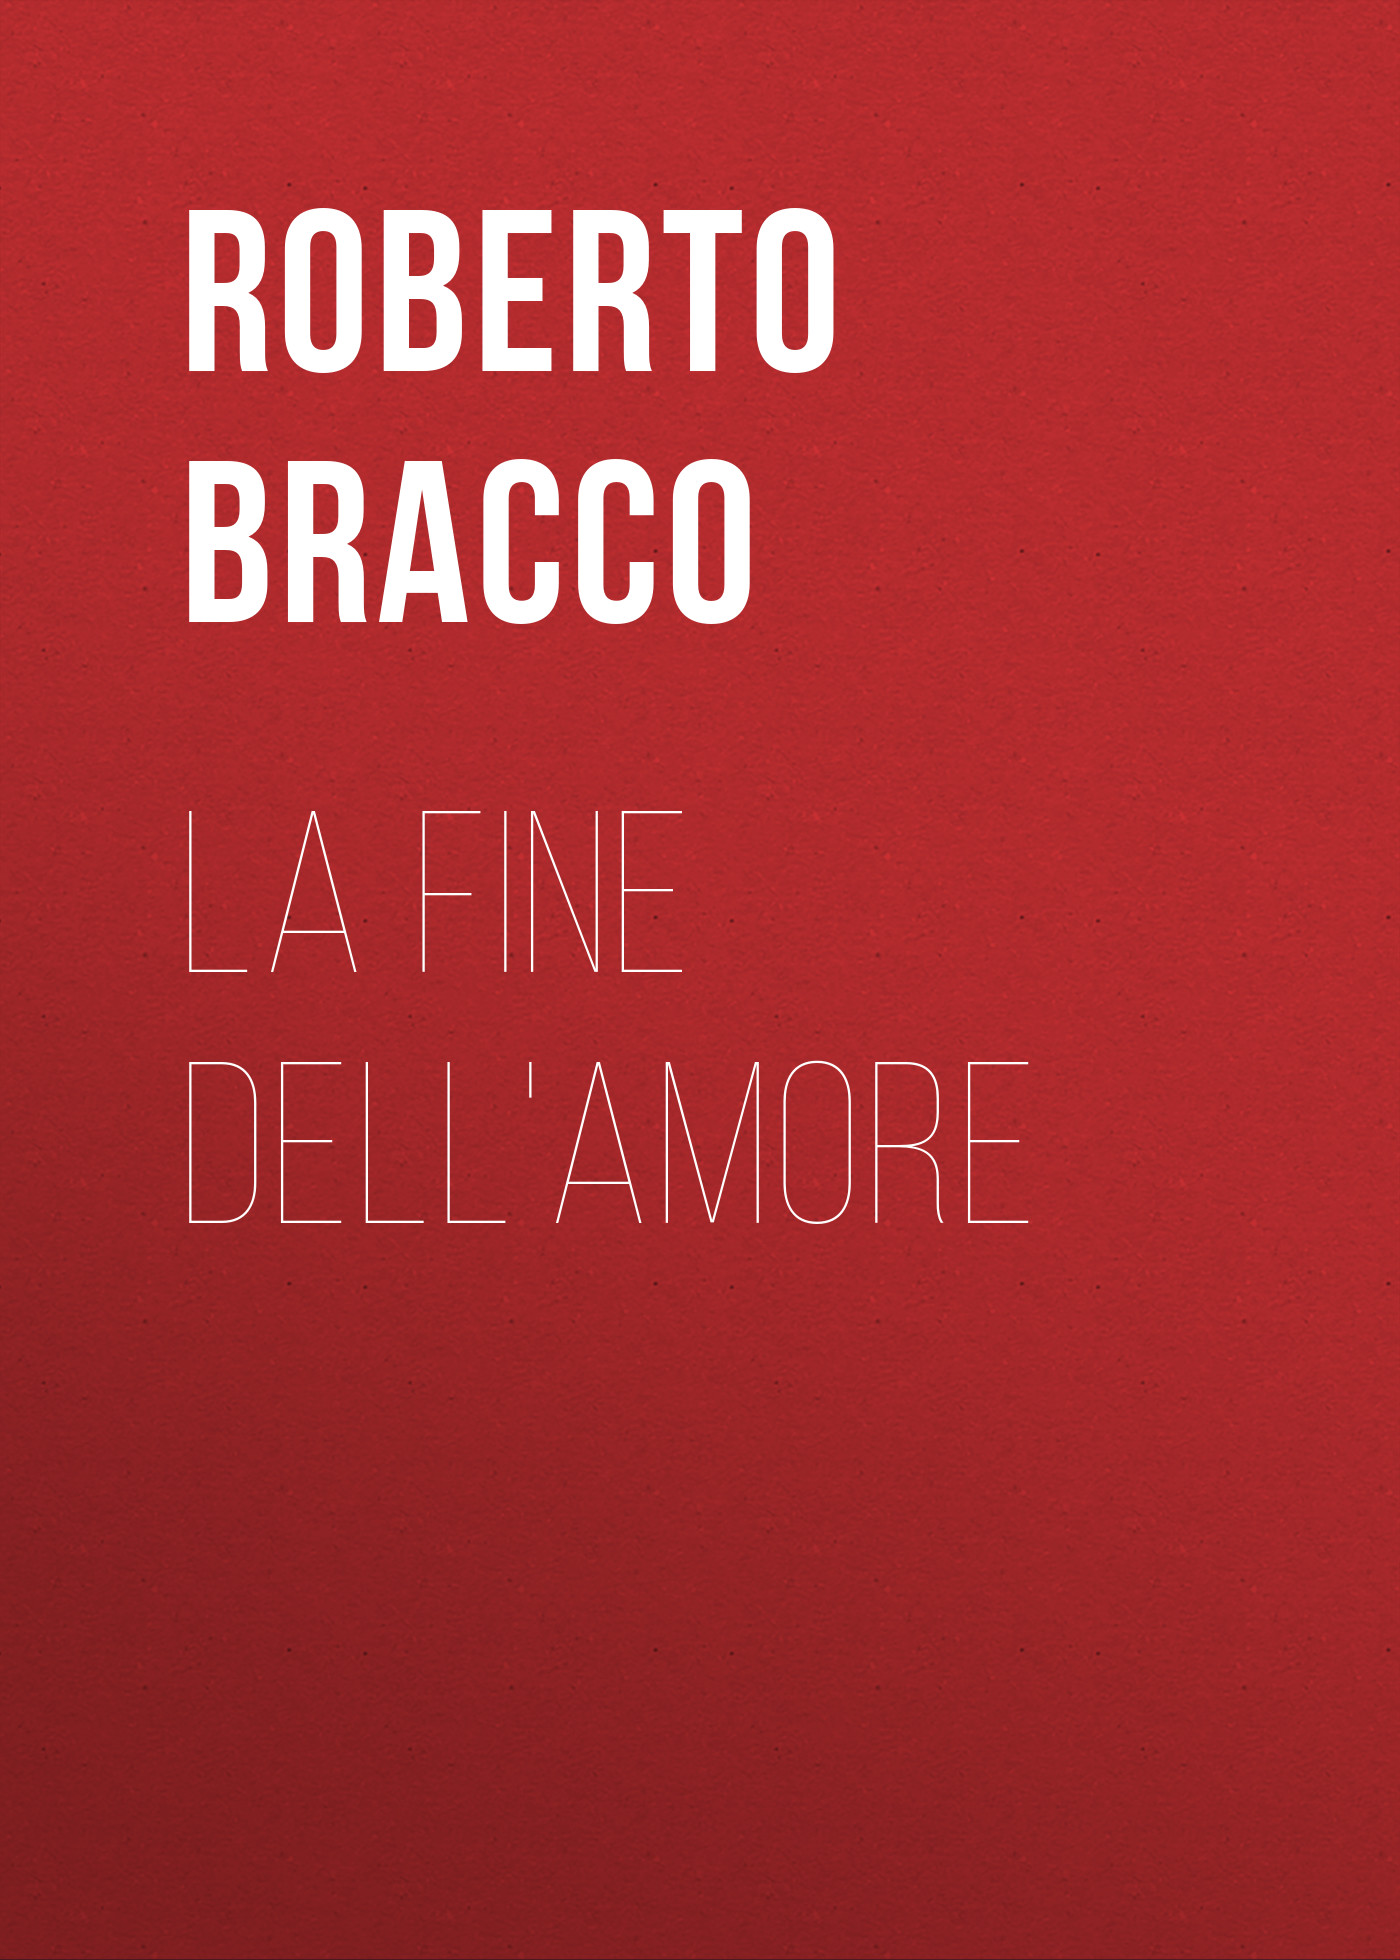 Книга La fine dell'amore из серии , созданная Roberto Bracco, может относится к жанру Зарубежная старинная литература, Зарубежная классика, Зарубежная драматургия. Стоимость электронной книги La fine dell'amore с идентификатором 24179716 составляет 0.90 руб.